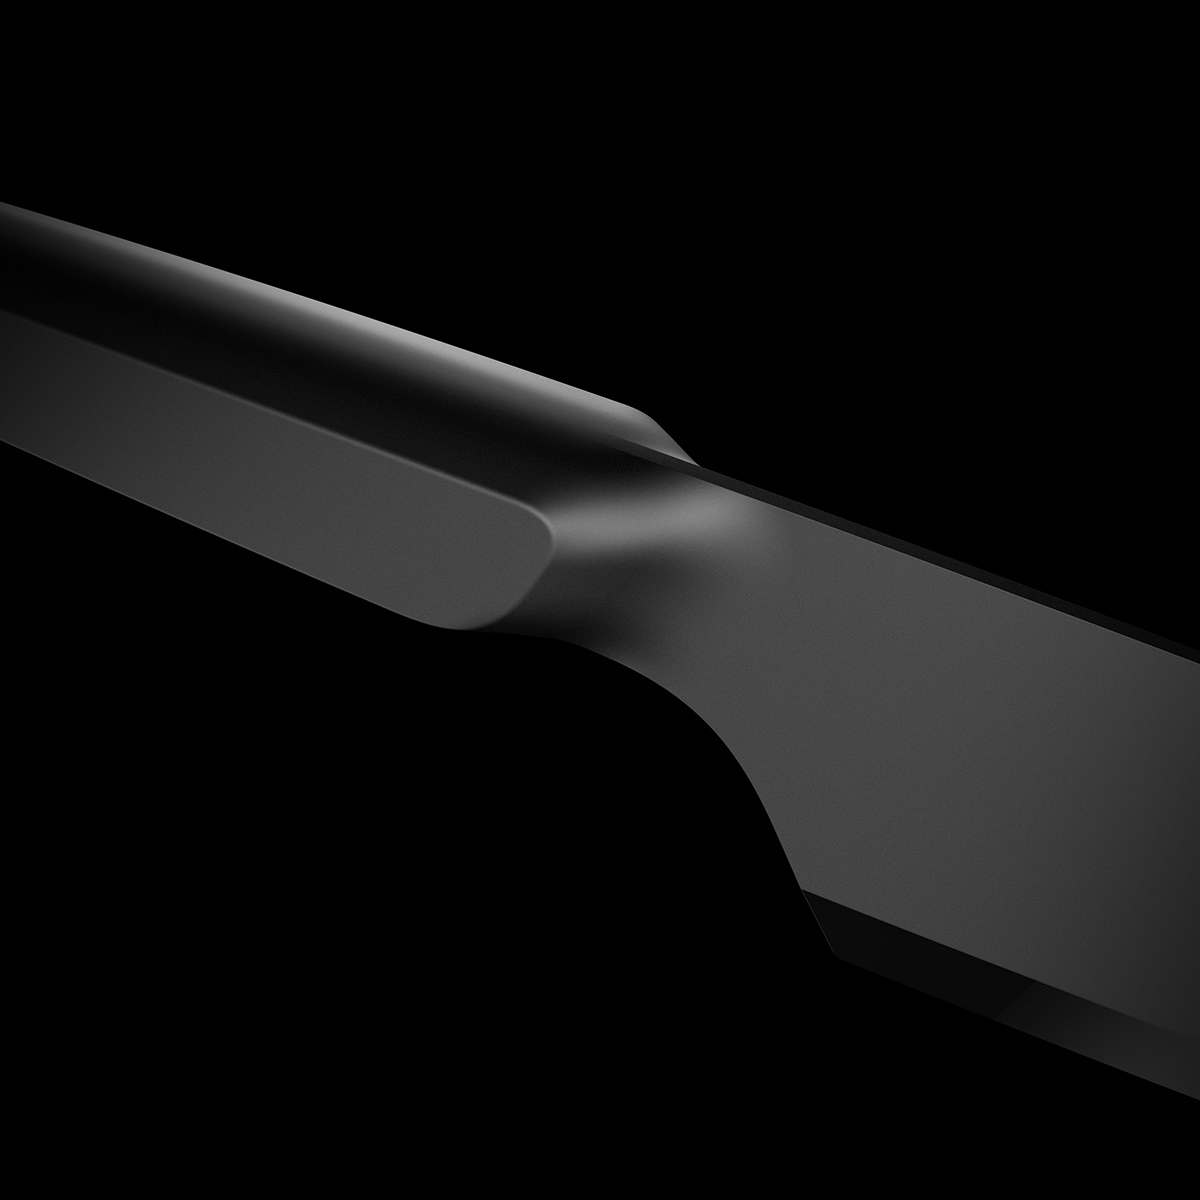 3D concept design industrialdesign kitchen knife KnifeDesign productdesign Render tools